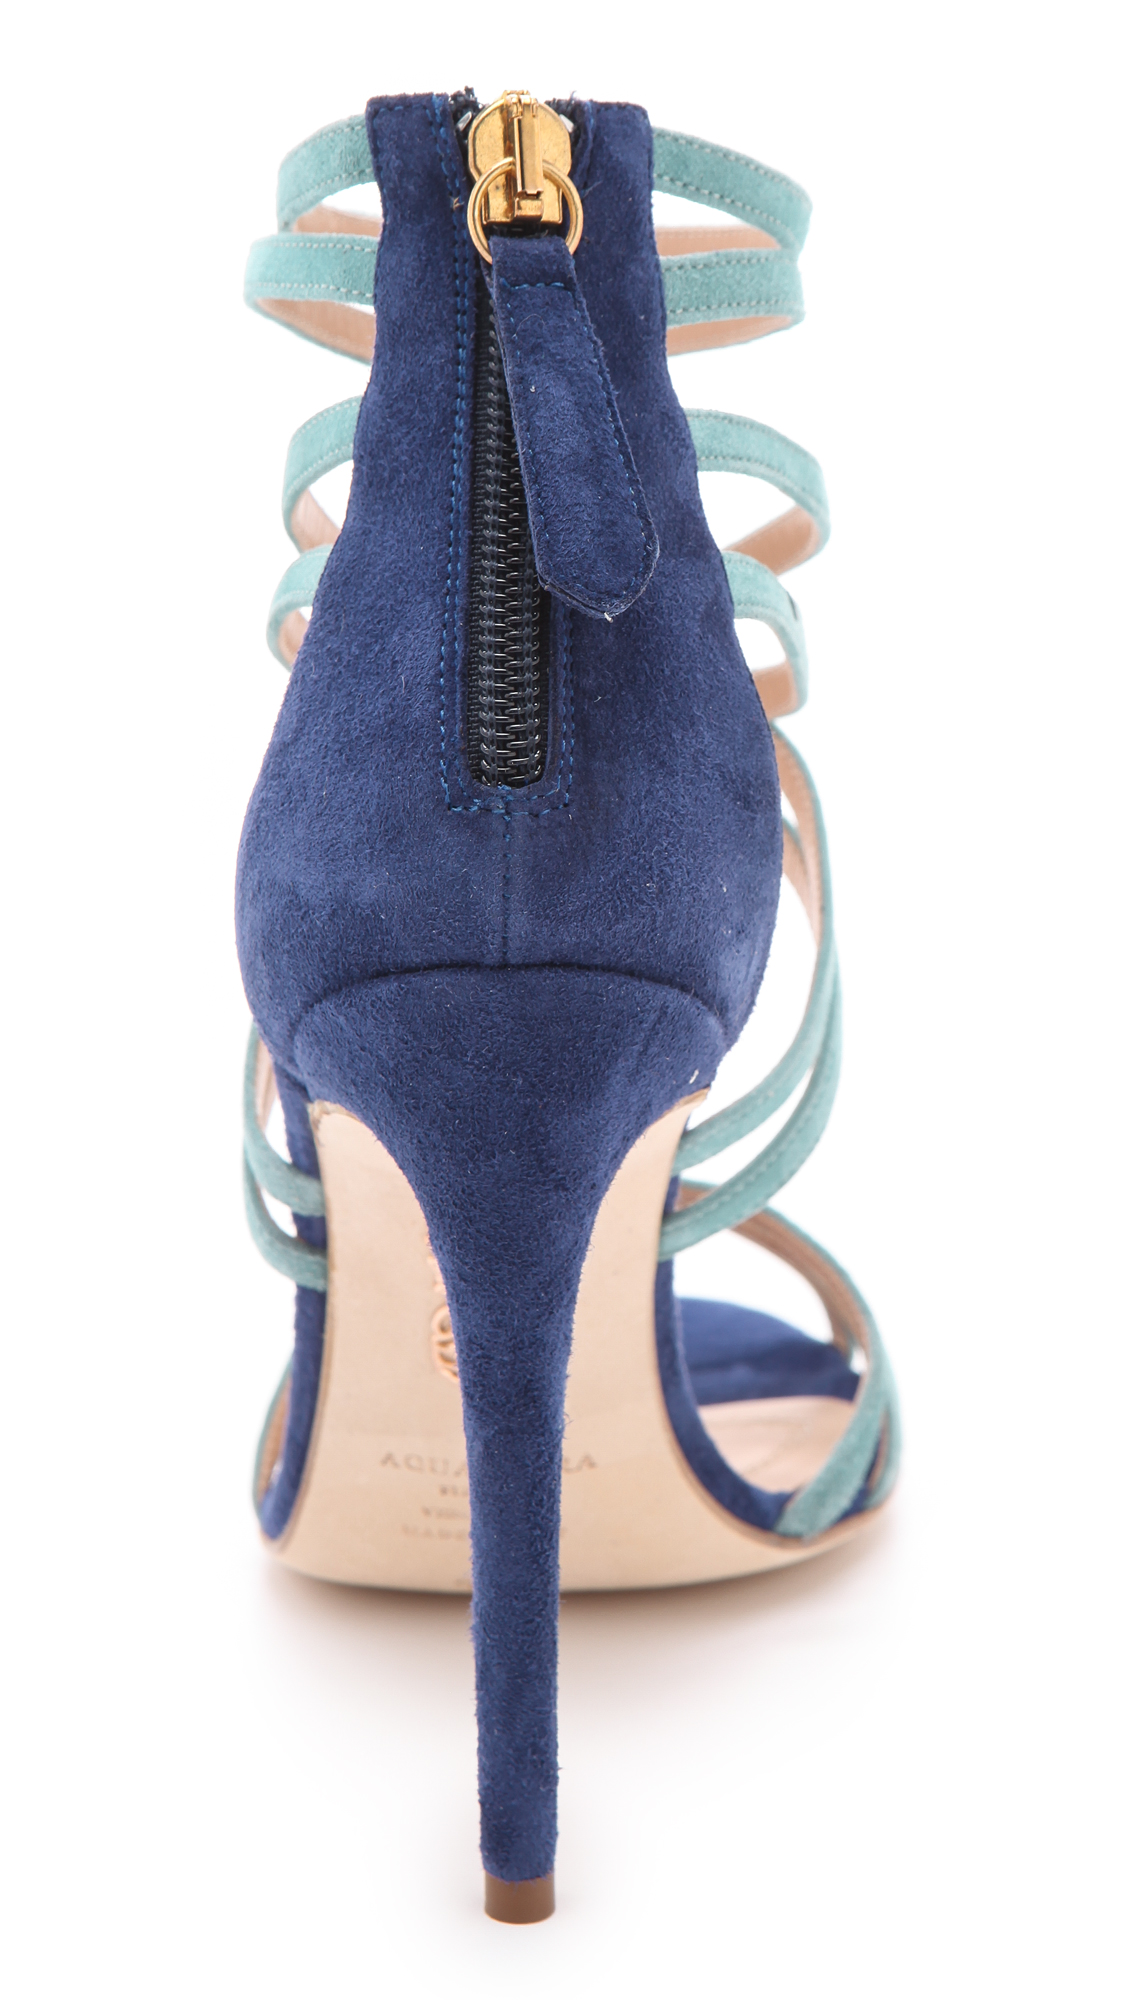 Lyst - Aquazzura Principessa Suede Sandals in Blue